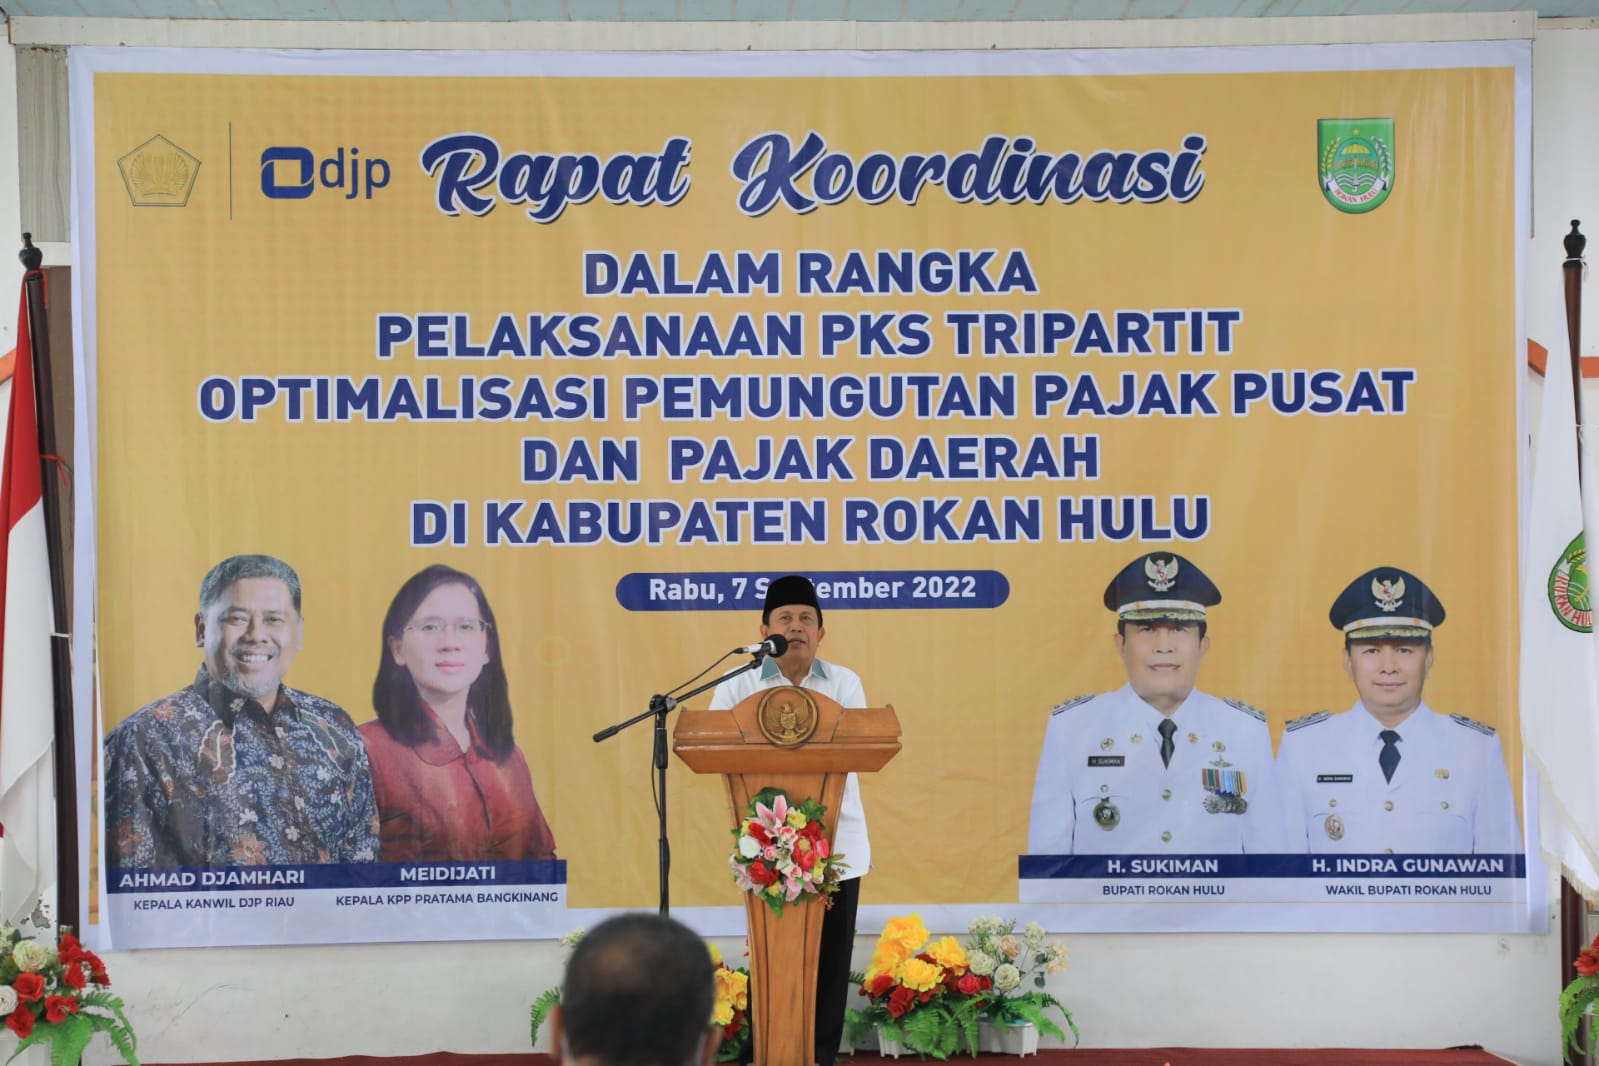 Optimalisasi Pemungutan Pajak Pusat dan Daerah, Bupati Rohul H. Sukiman Jalin PKS Tripartit bersama Kanwil DJP Riau